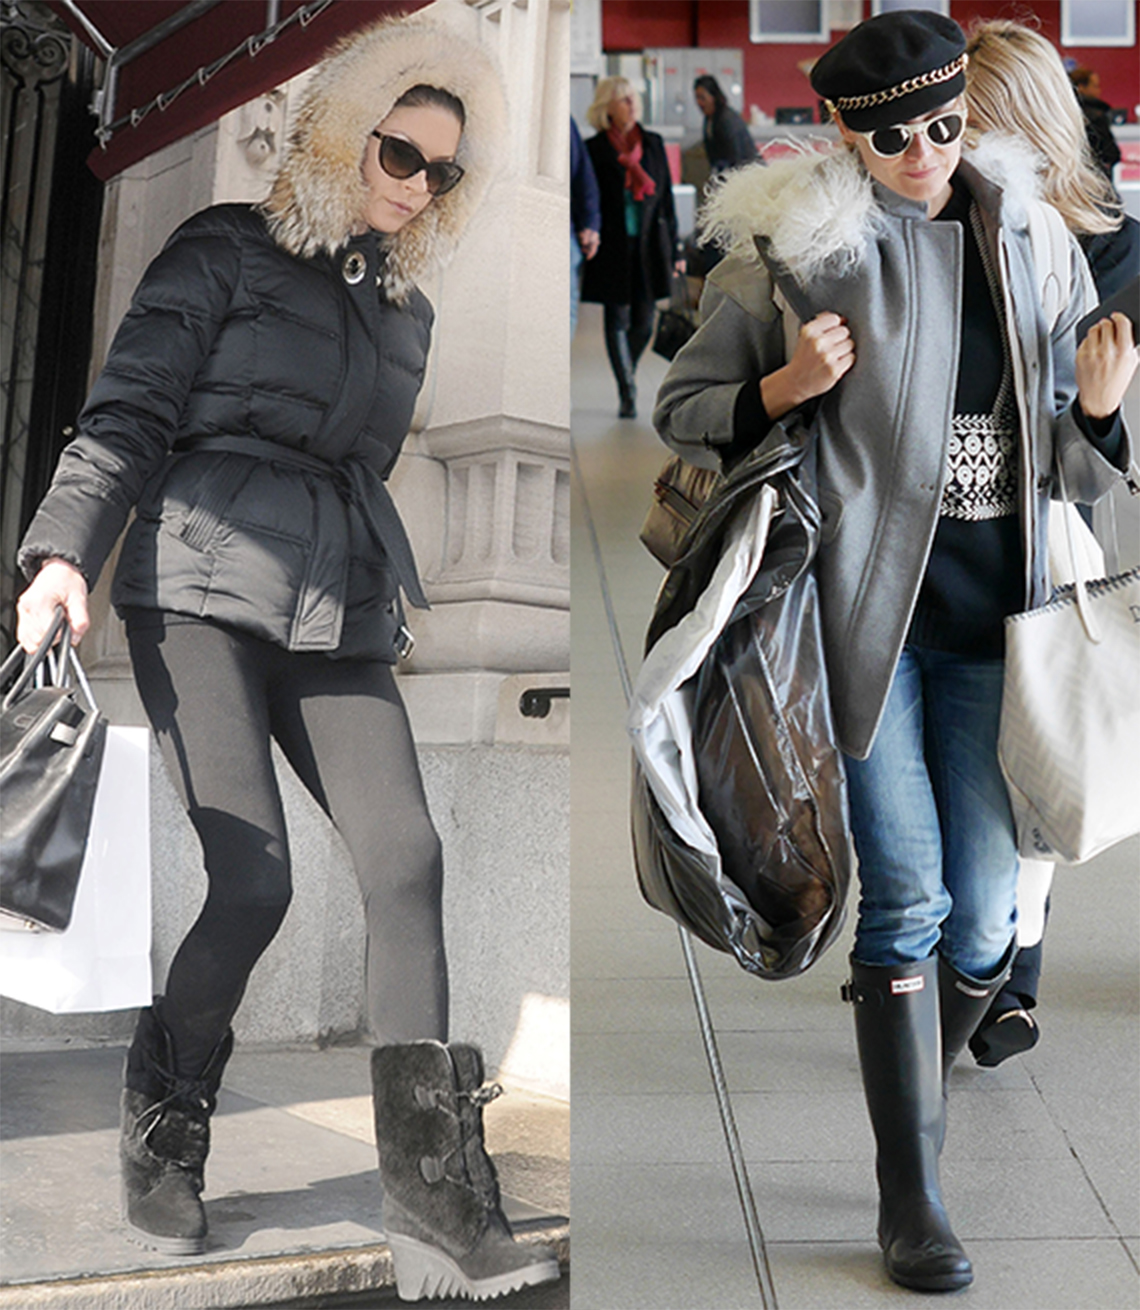 Catherine Zeta Jones and Diane Kruger in outdoor boots